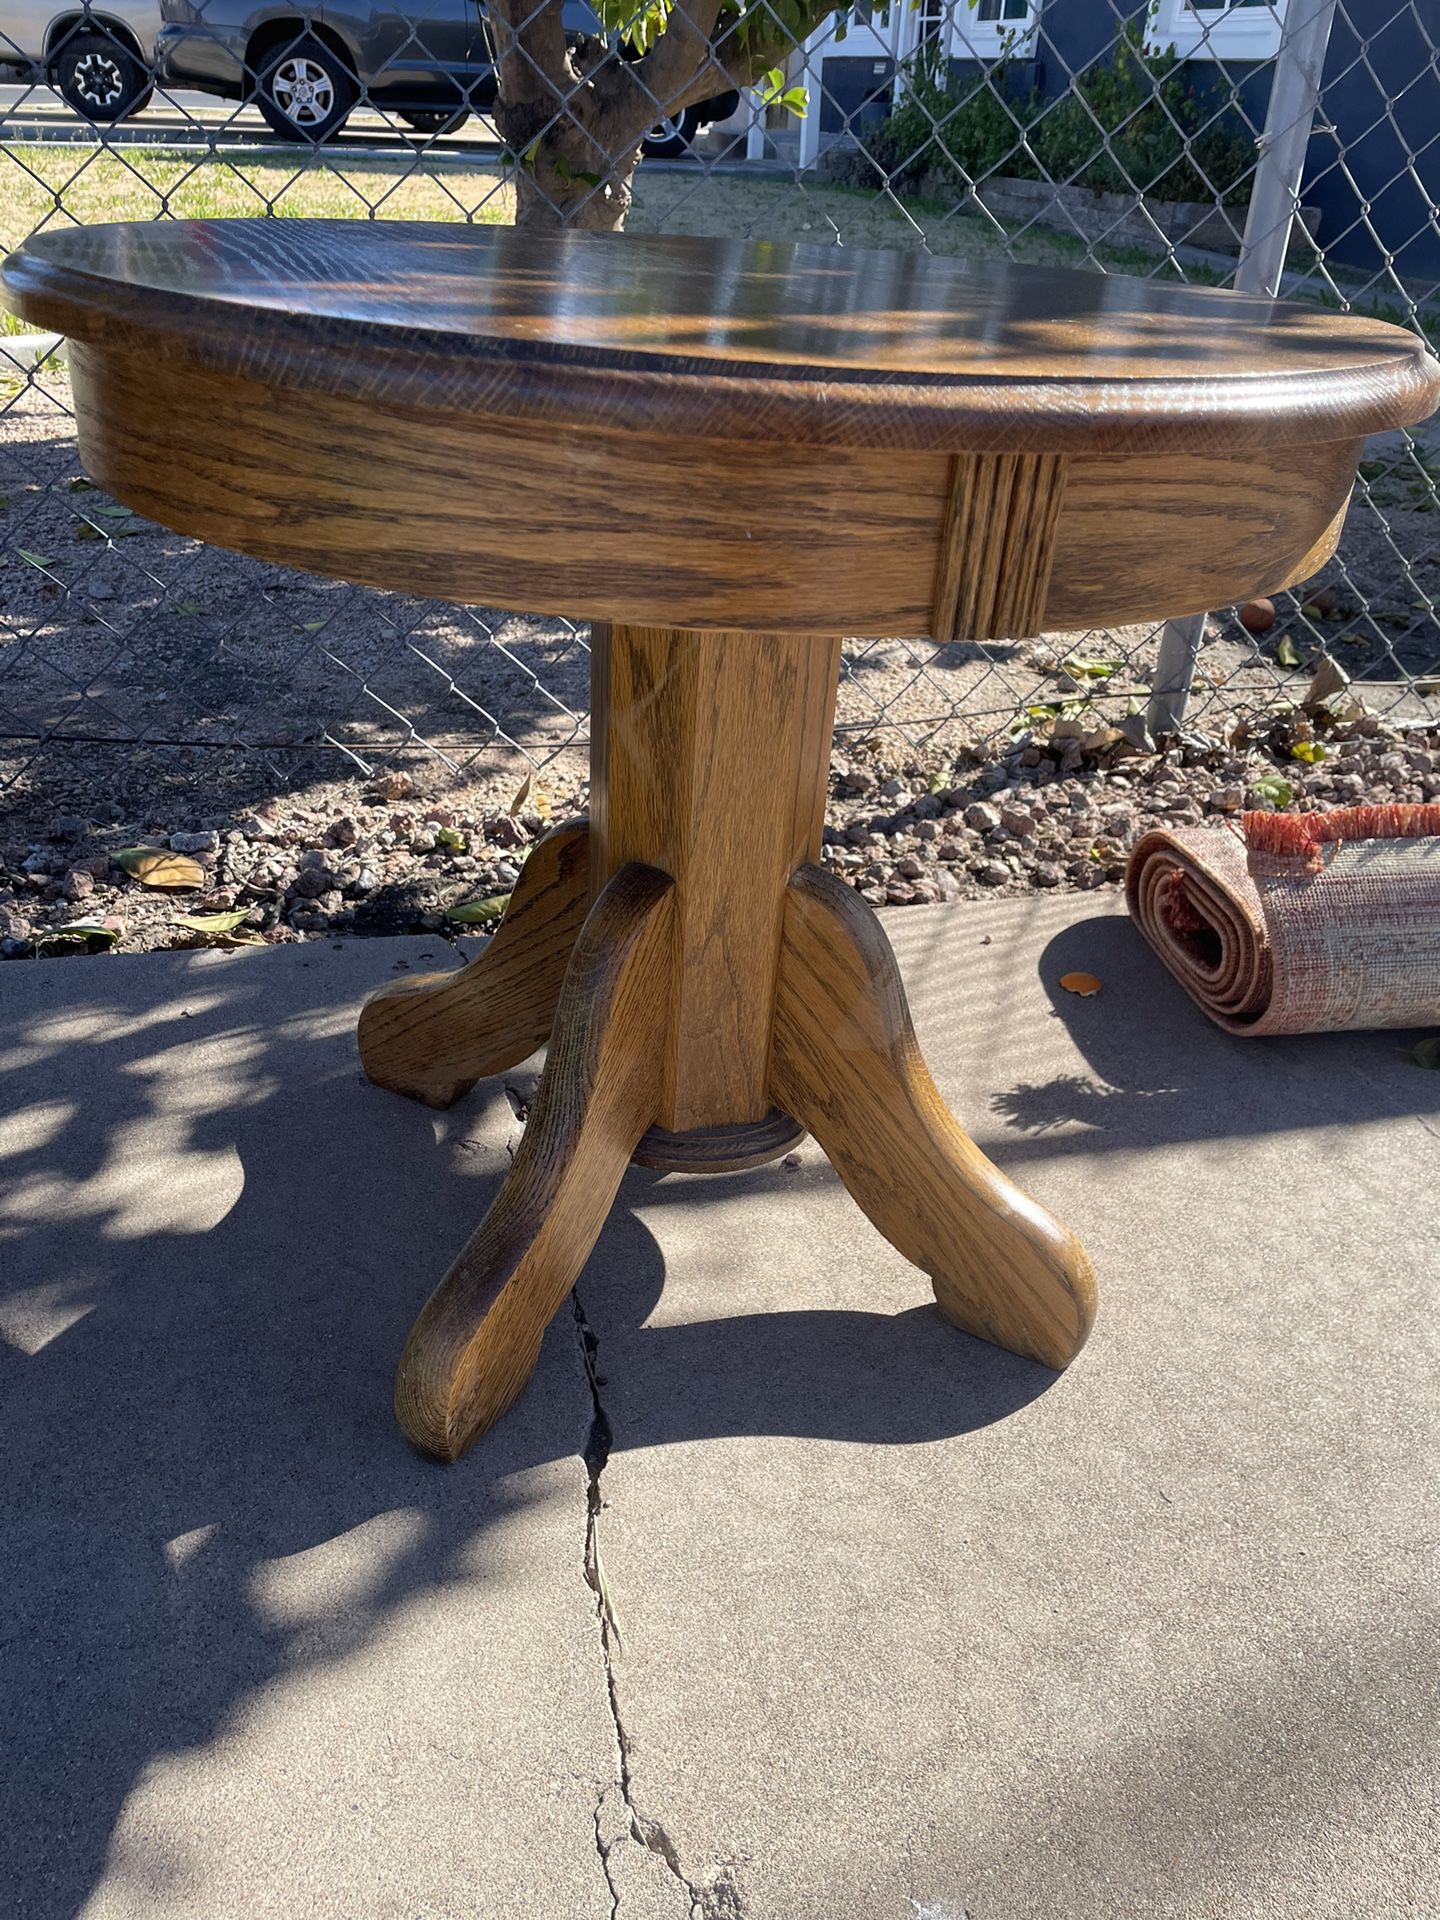 Antique Oak Side Table Solid Wood Vintage Pedestal End Table Nightstand 